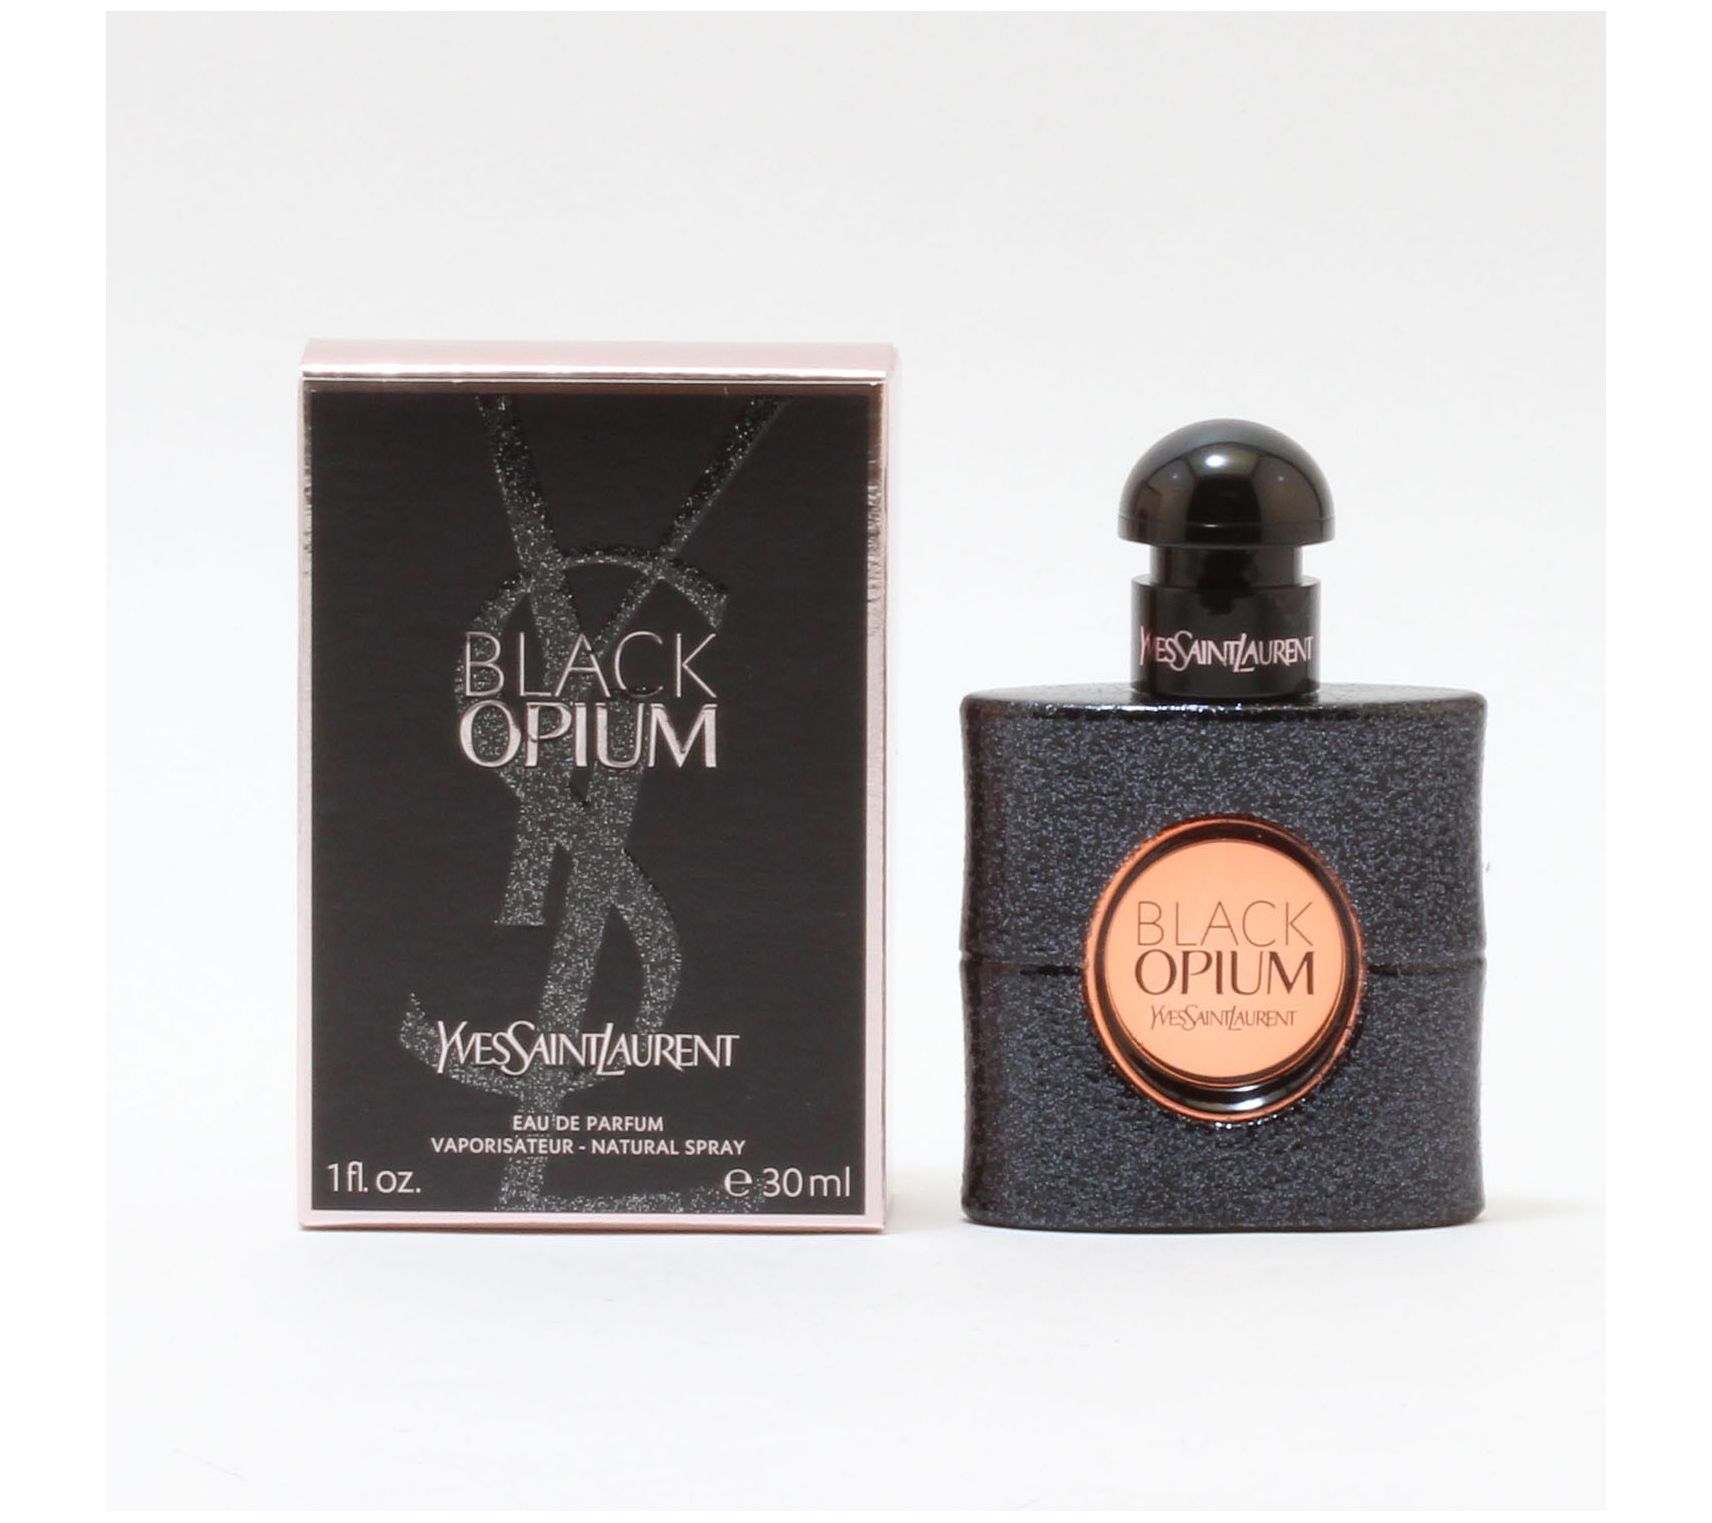 Yves Saint Laurent Black Opium Eau de Parfum, Perfume for Women, 1 Oz 